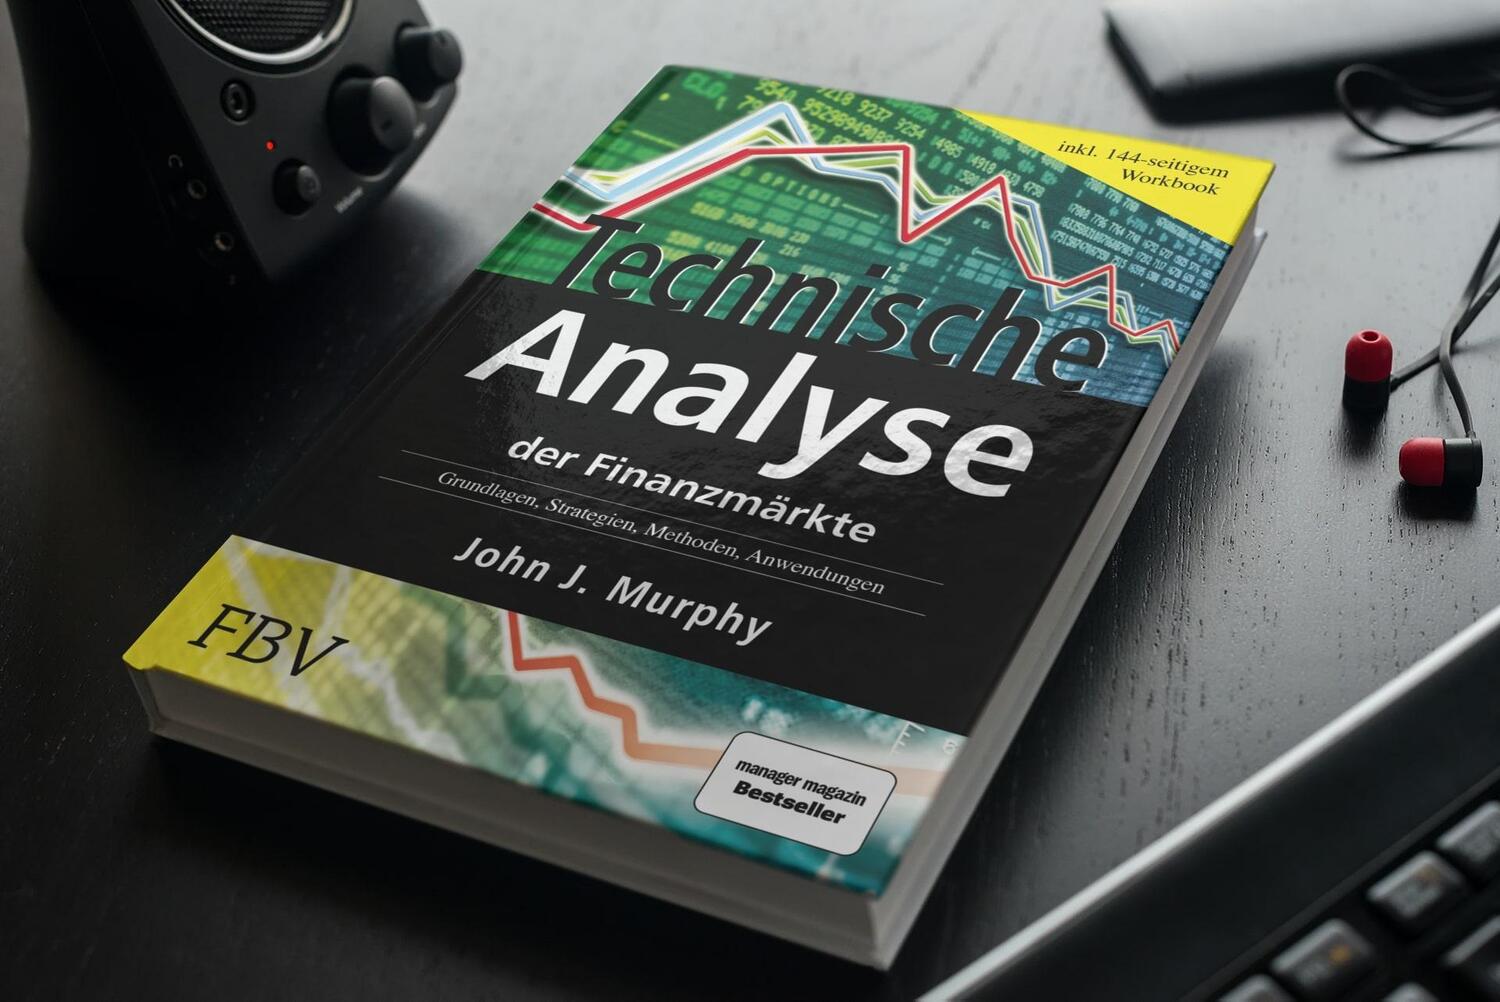 Bild: 9783898790628 | Technische Analyse der Finanzmärkte. Inkl. Workbook | John J. Murphy